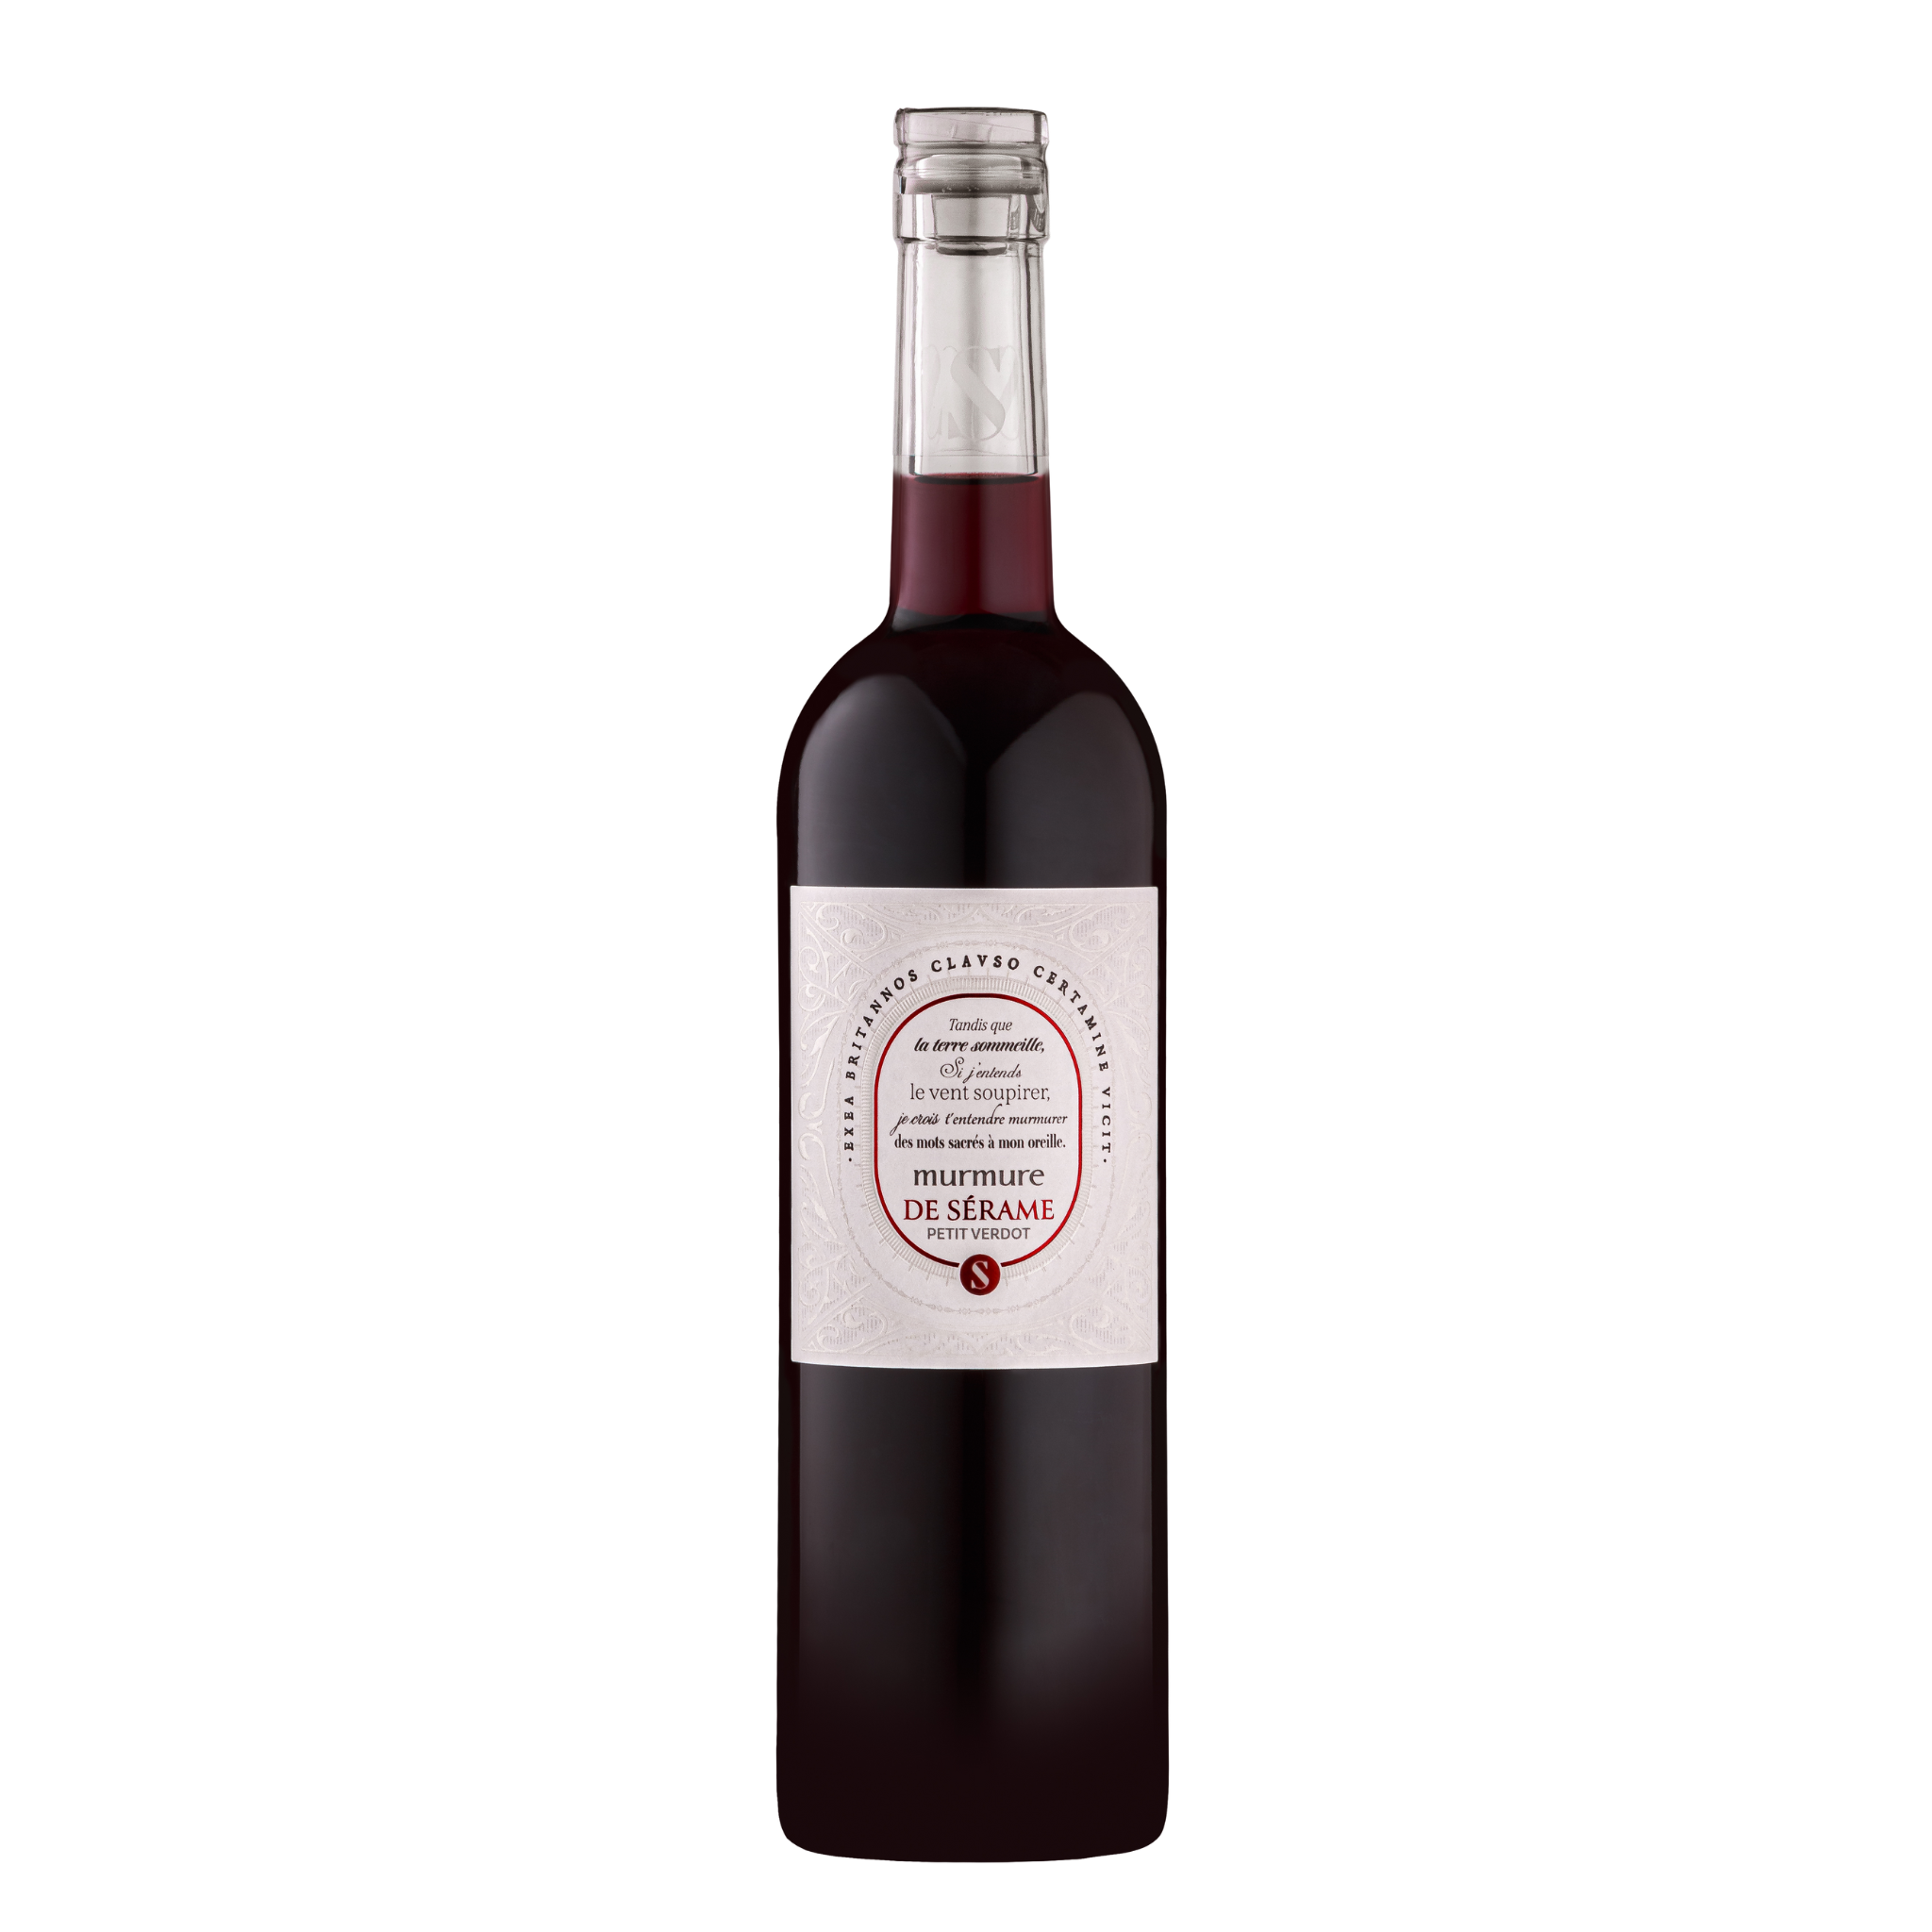 Bouteille de Murmure de Sérame Cinsault rouge, Vin de France, vin bio